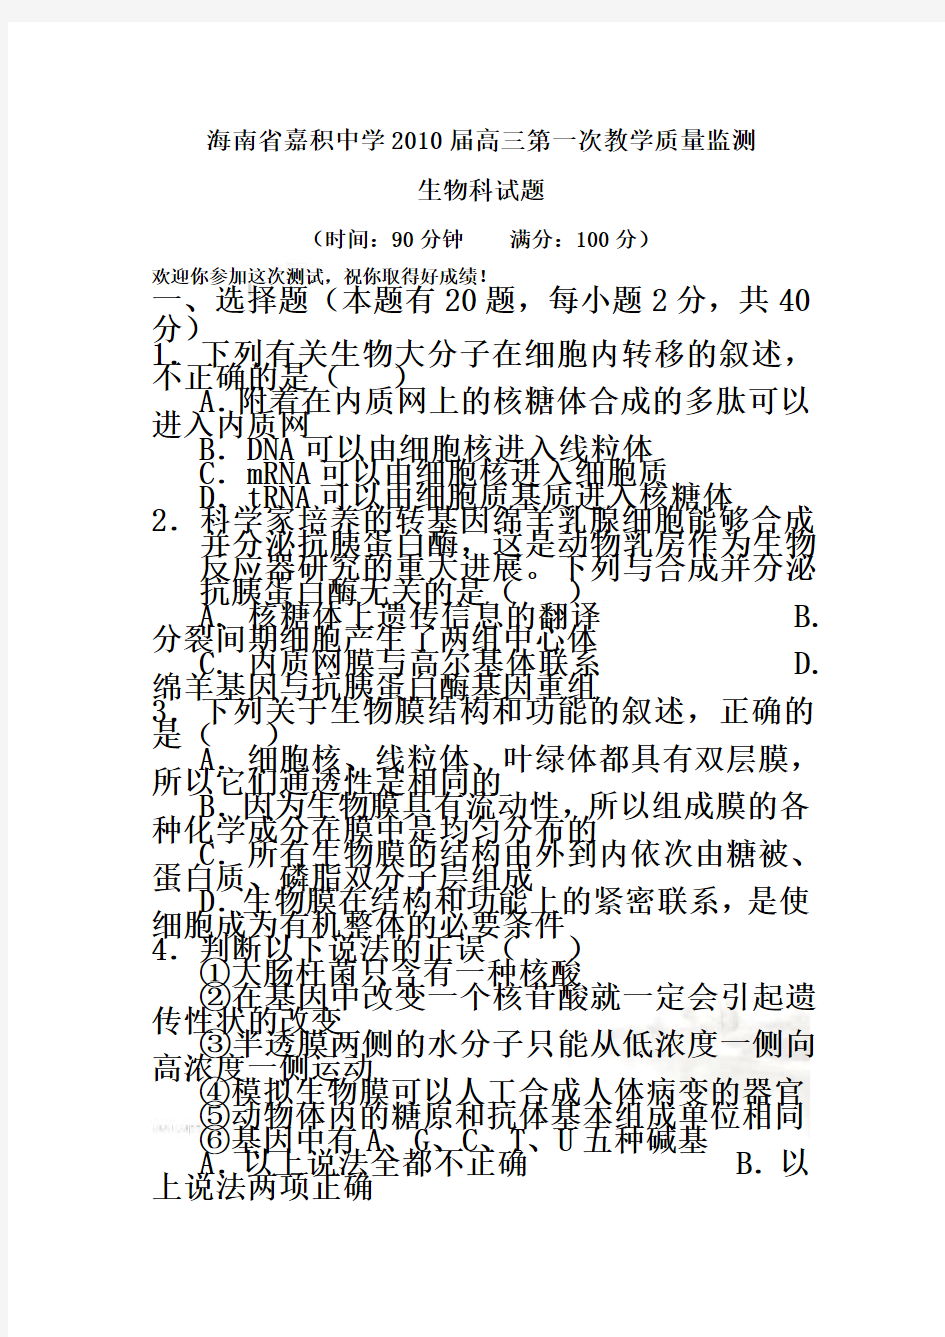 海南省高三生物教学质量测试题(doc 7页)